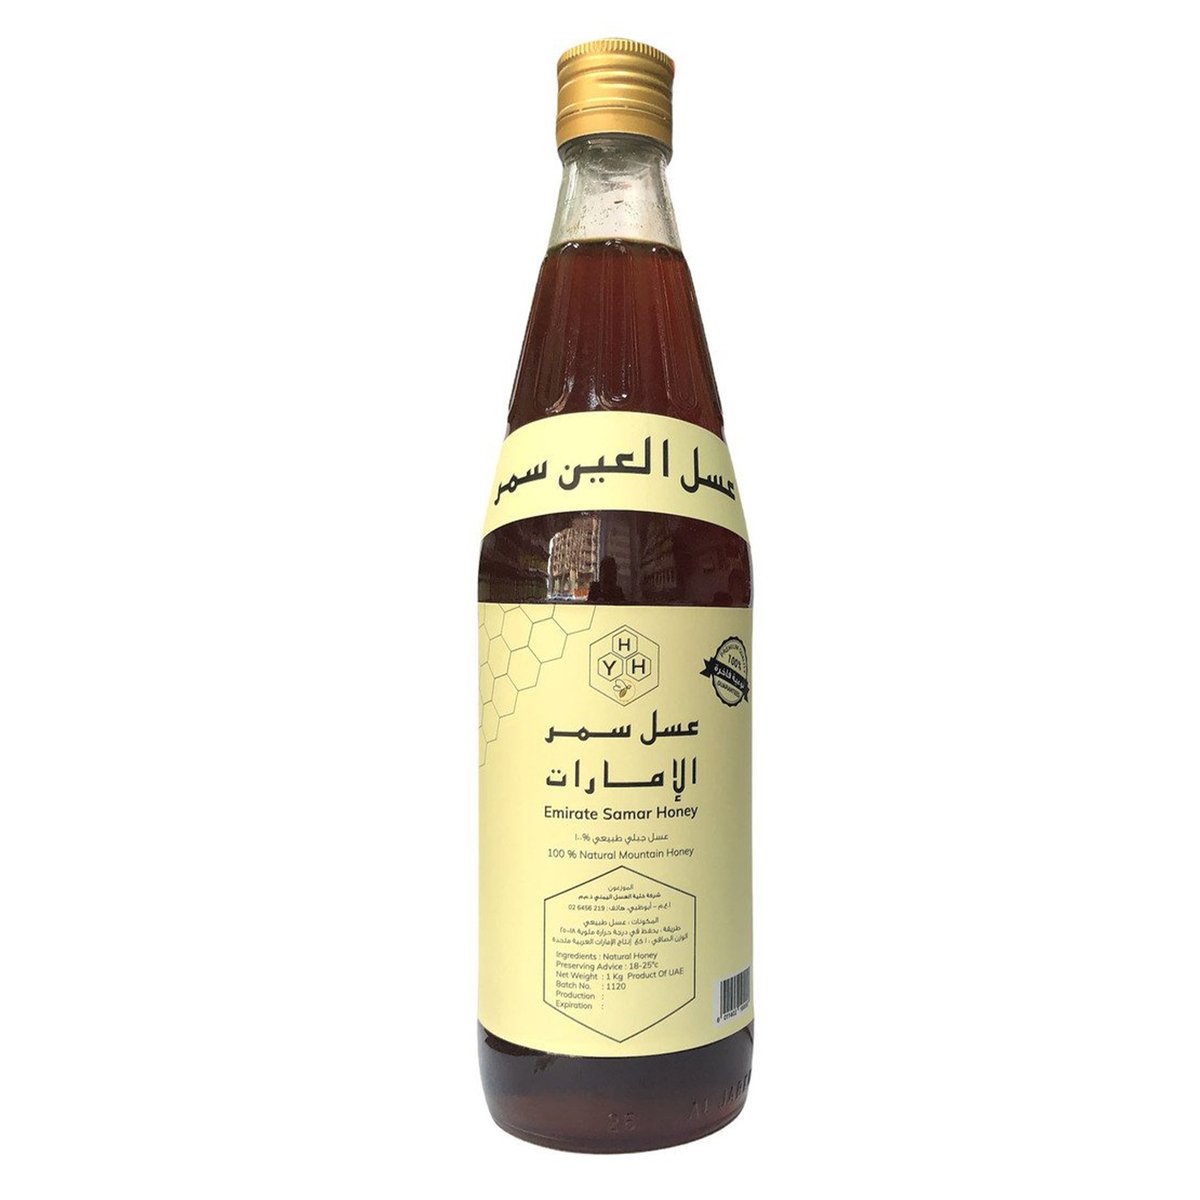 Emirates Honey Samar 1 kg